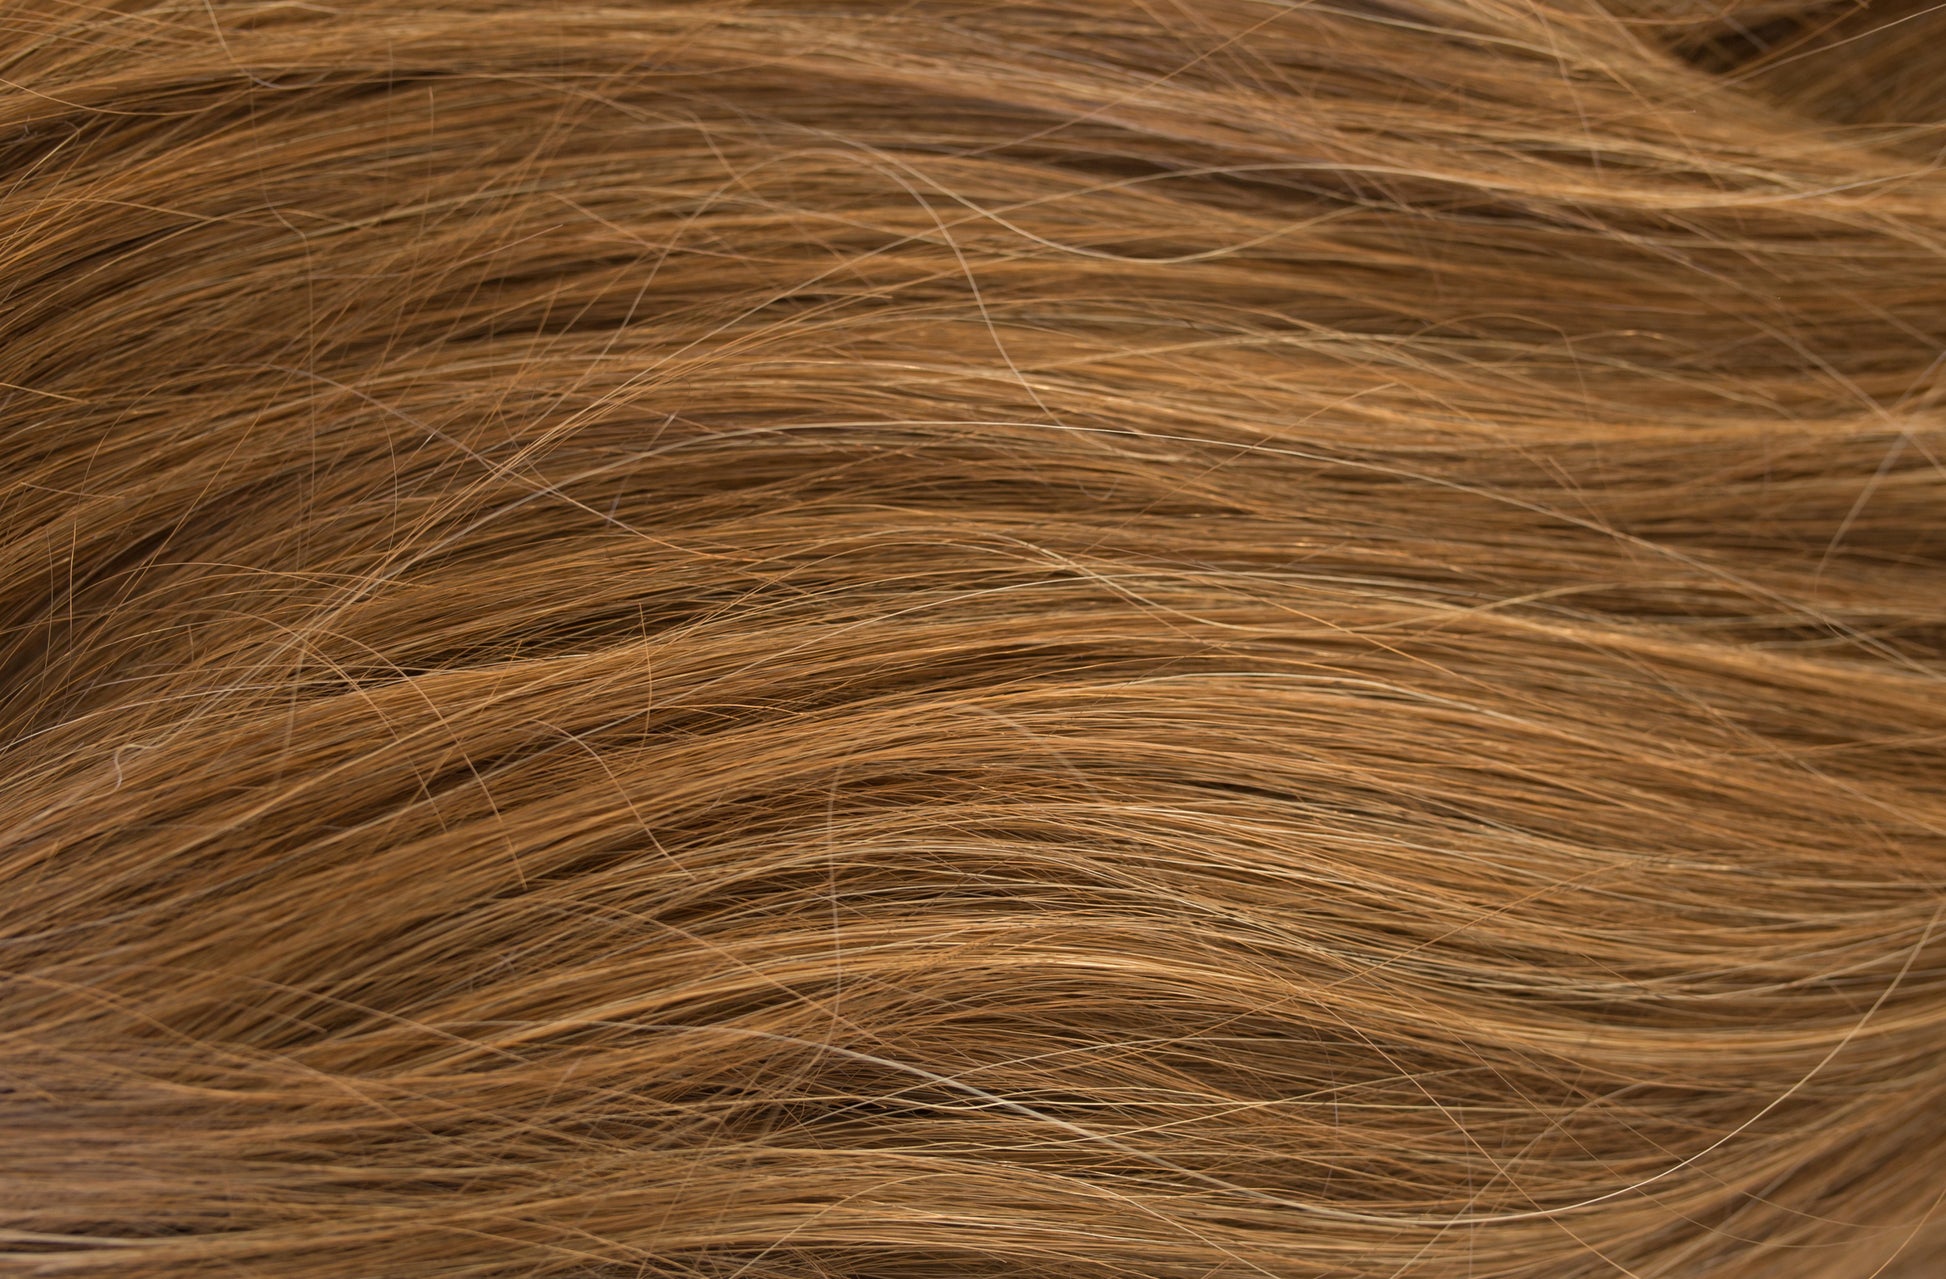 Kensley (Child's) - Wigs Online